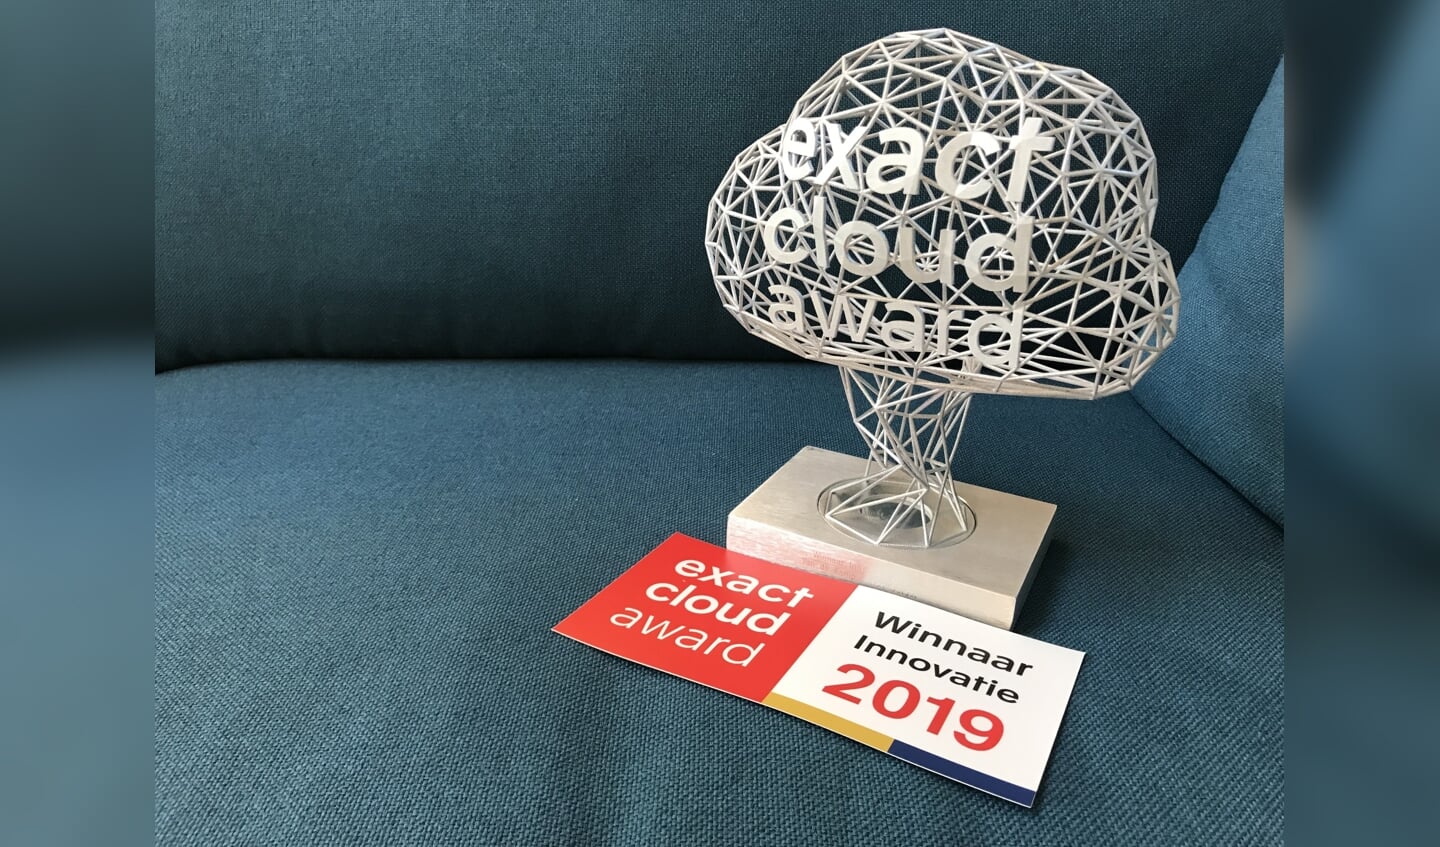 Innovatie award 2019